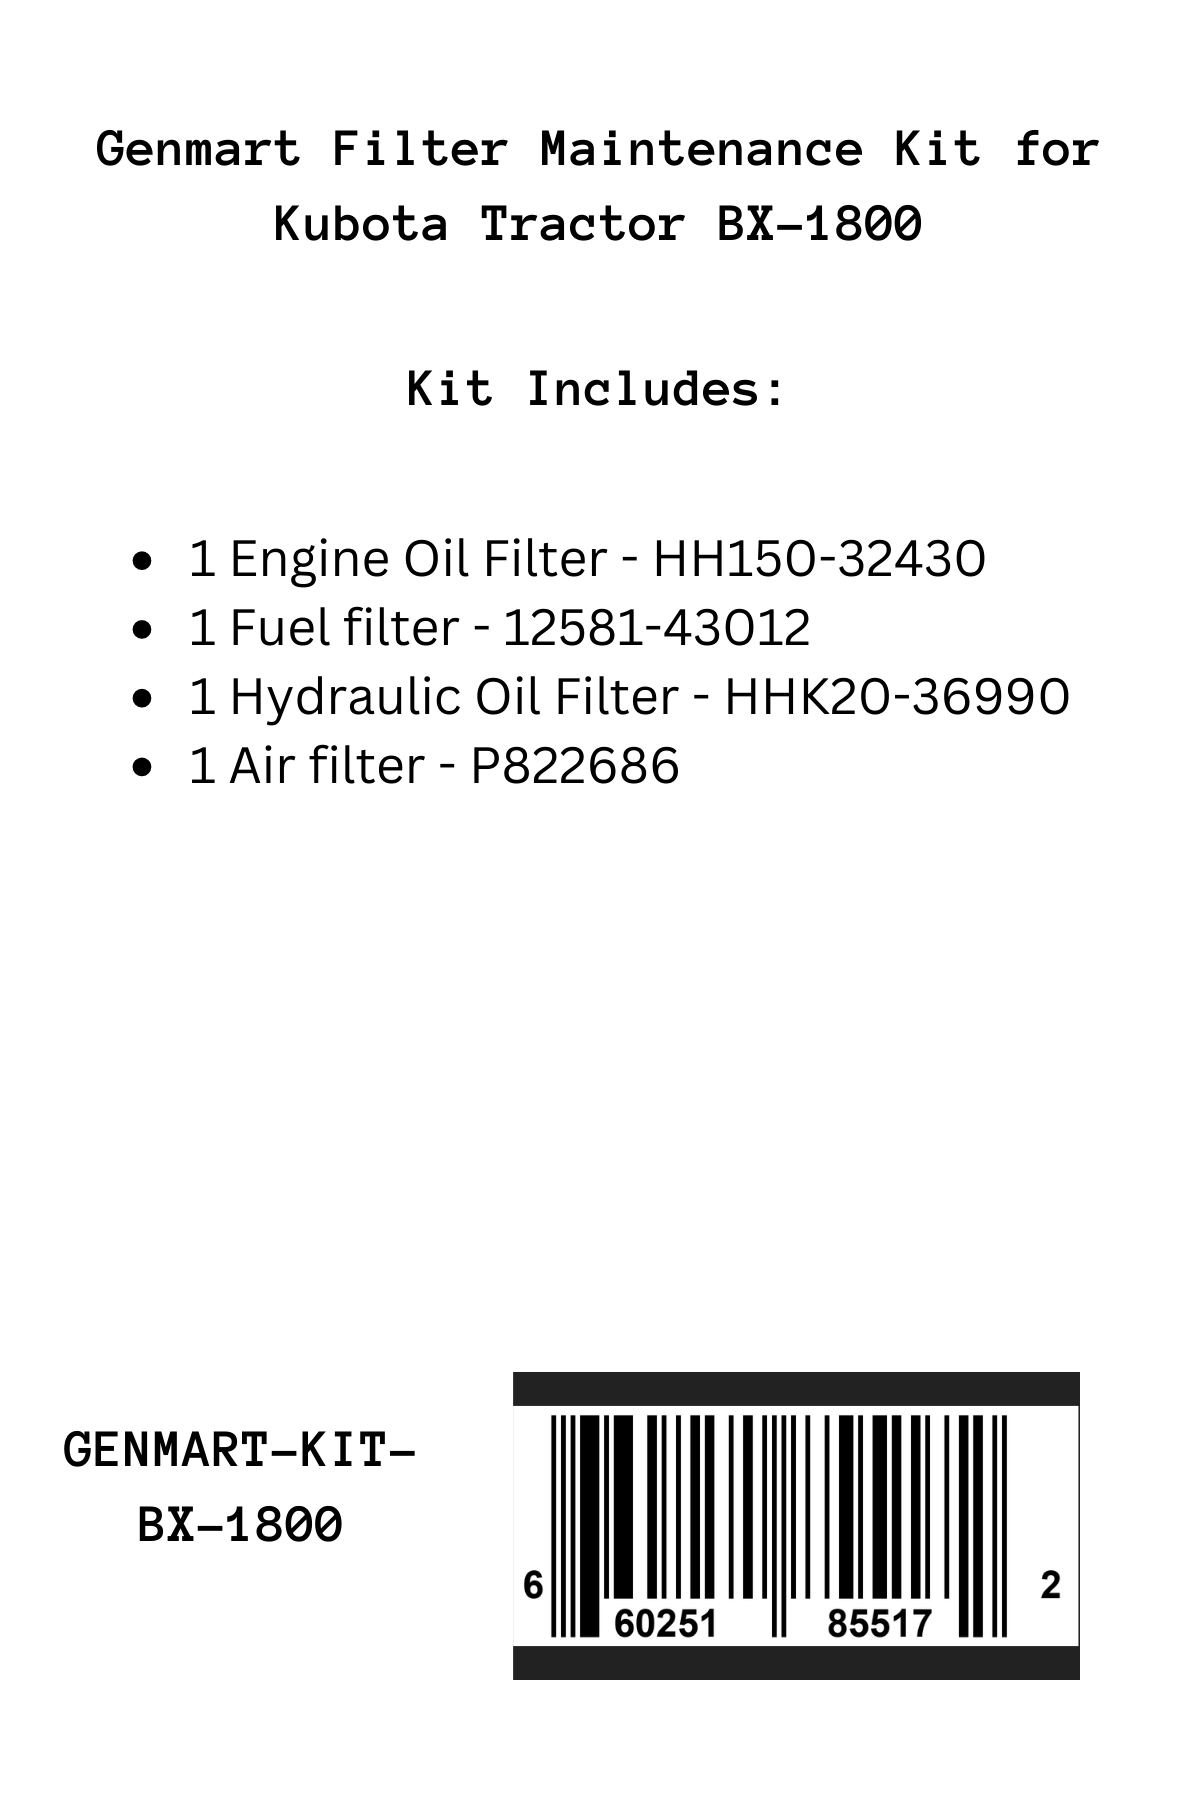 Genmart Maintenance Kit for Kubota Tractor BX-1800